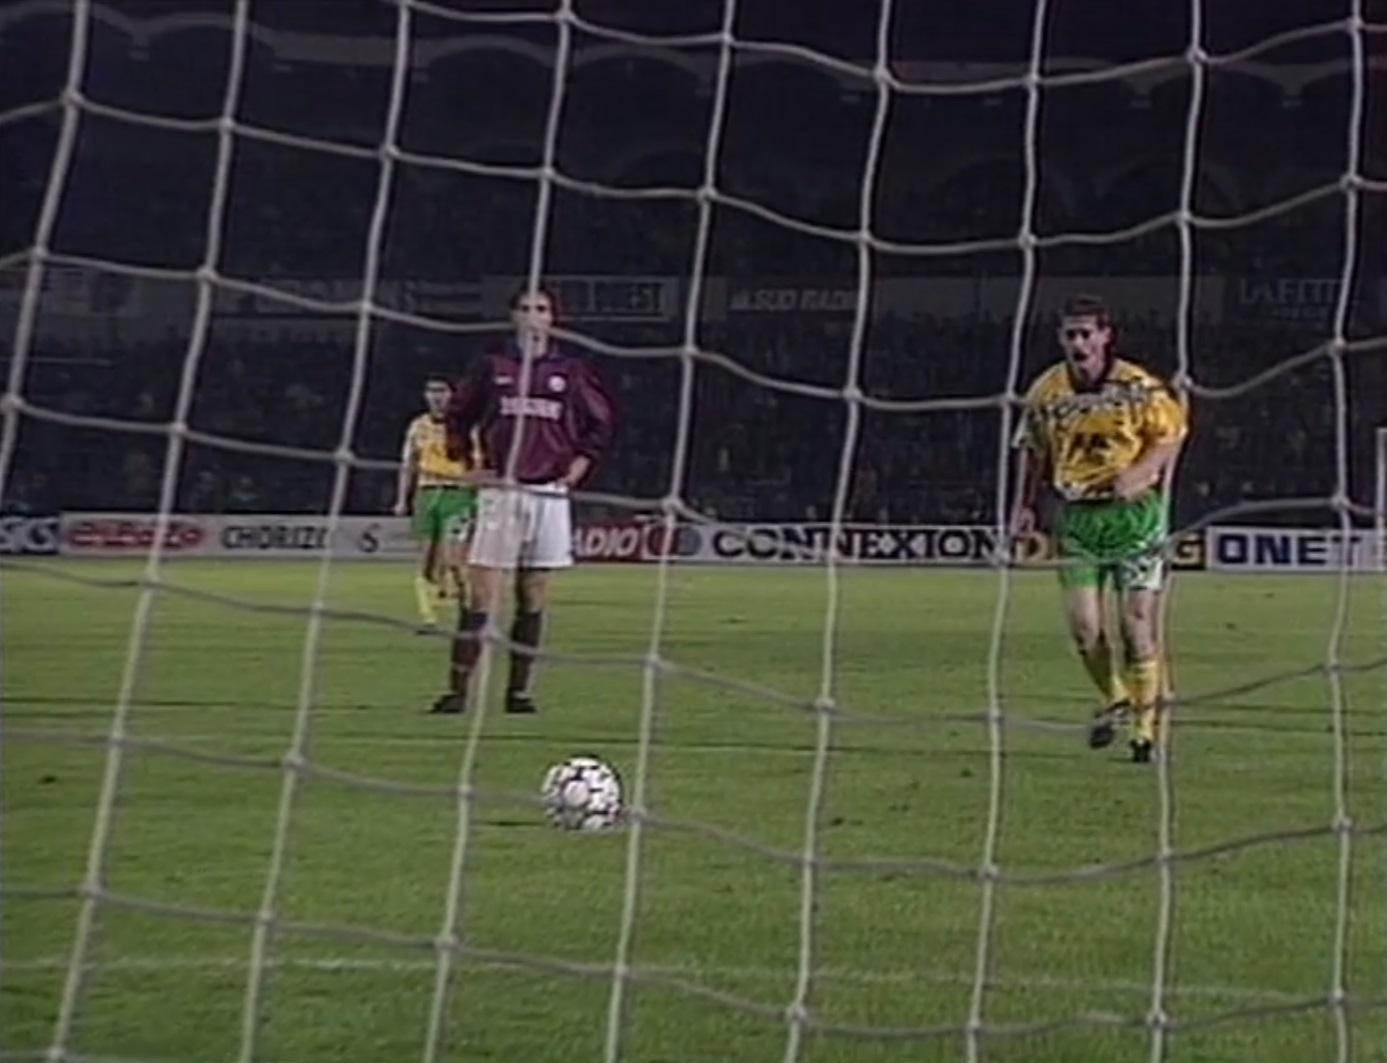 Girondins Bordeaux - GKS Katowice 1:1 (01.11.1994)